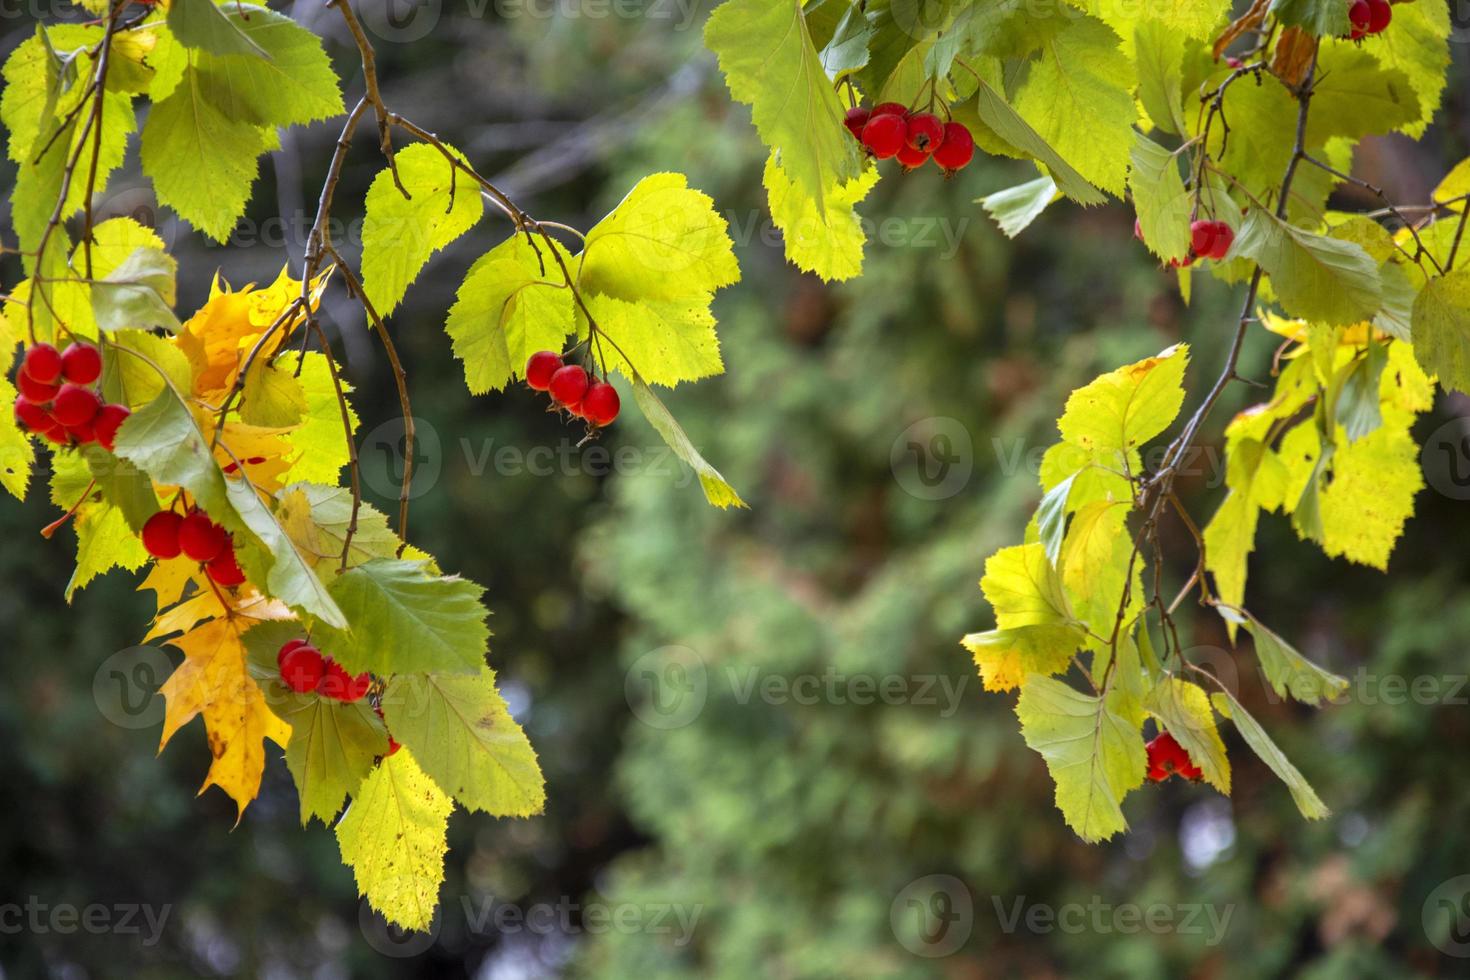 meidoornbessen op een onscherpe achtergrond. meidoorn met rode bessen en groene bladeren in de herfst. foto